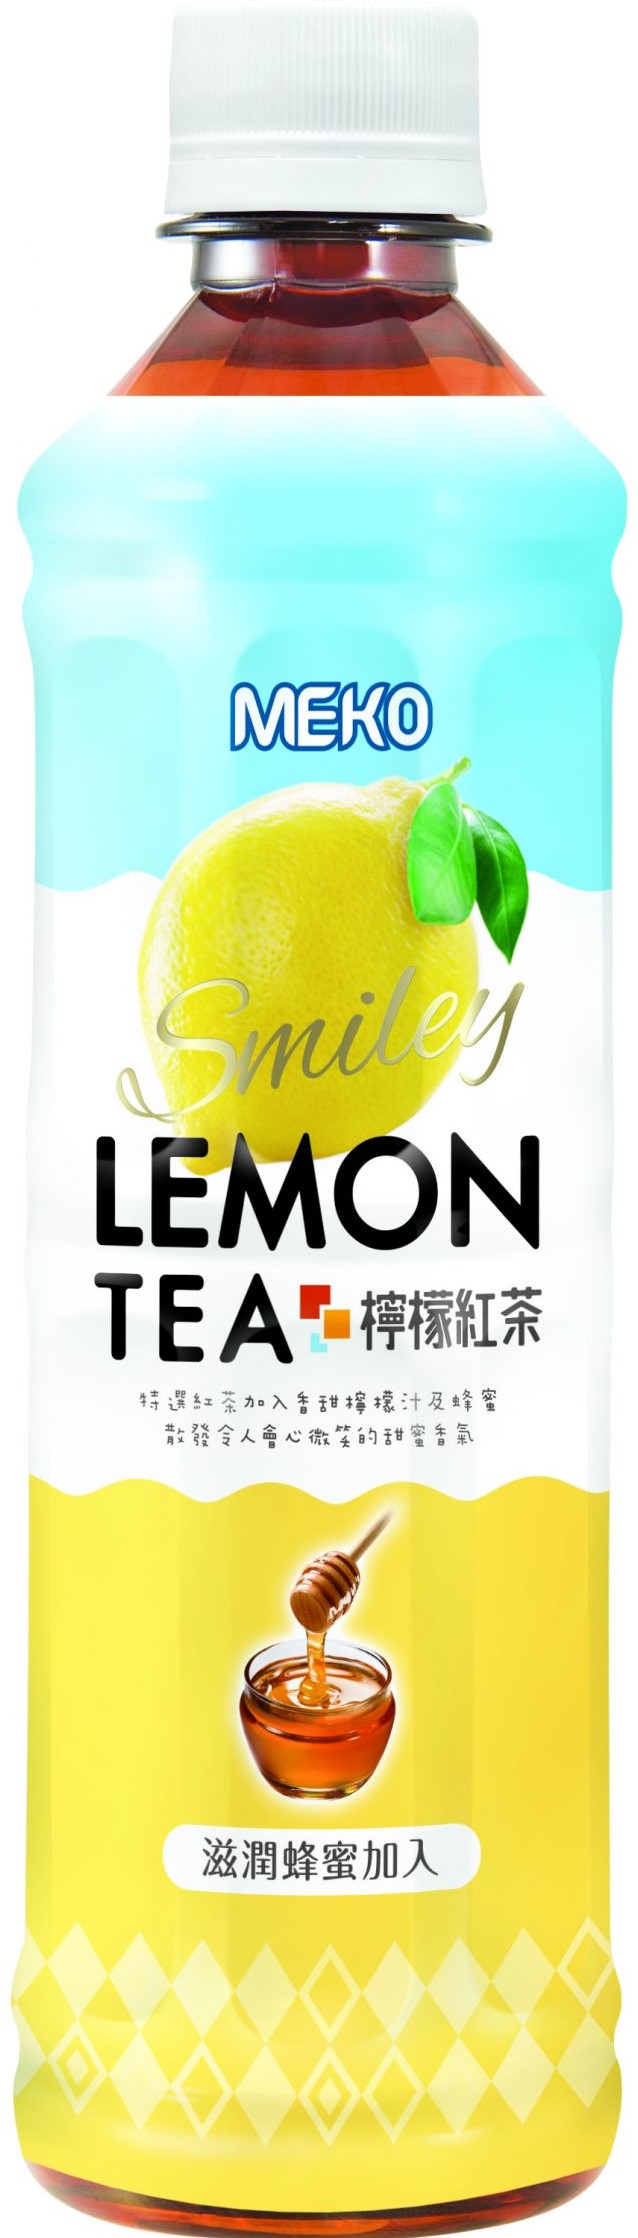 MEKO 美果【柠檬红茶】加入滋润蜂蜜 430ml